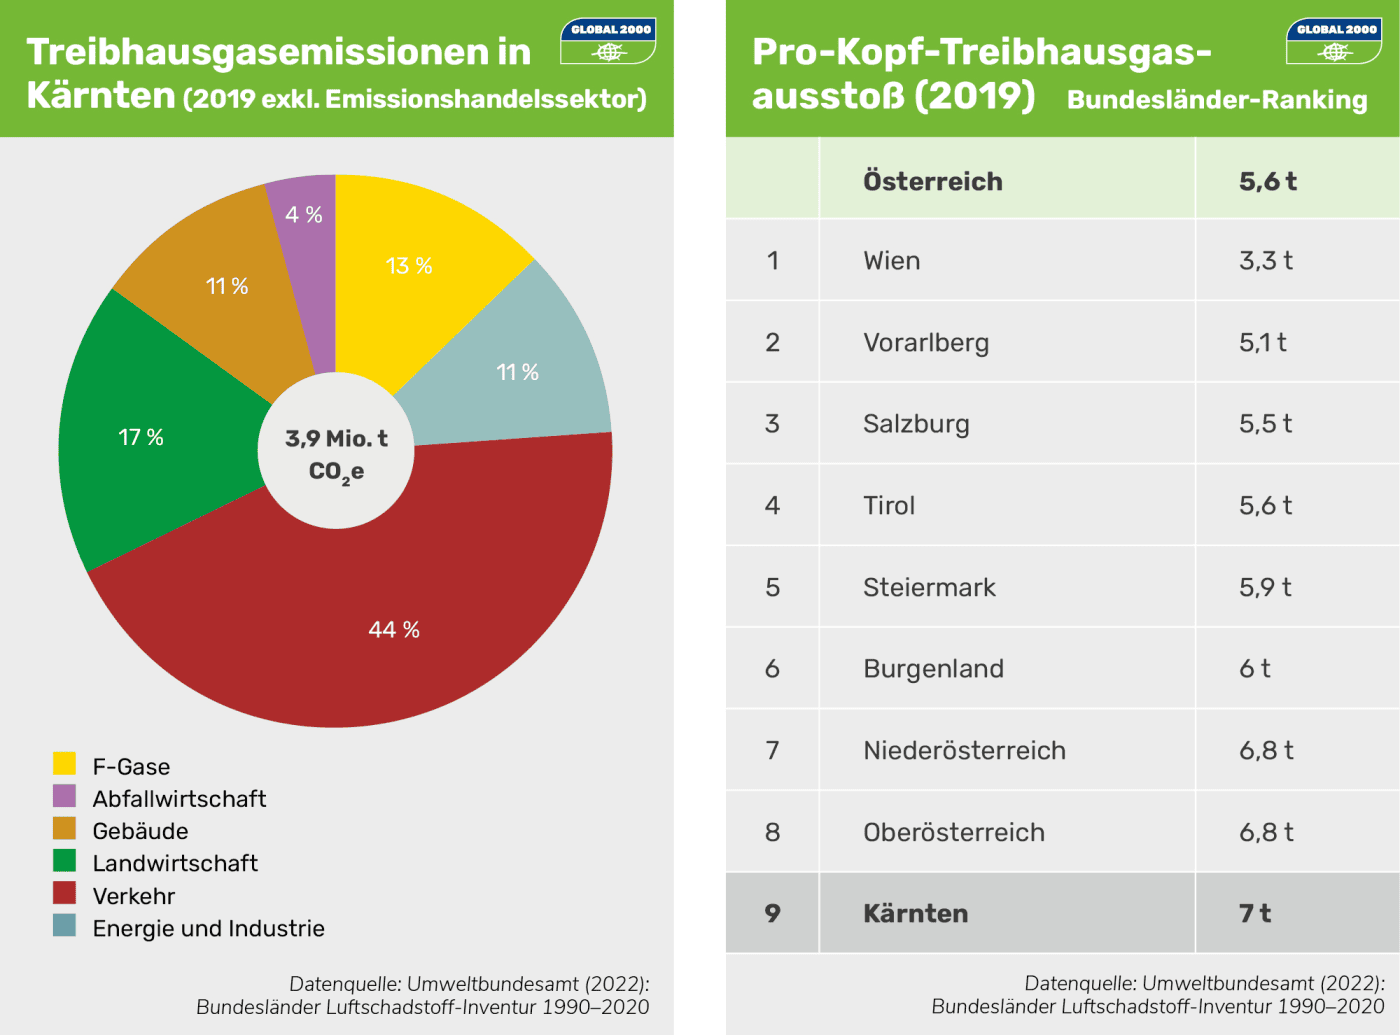 Kärnten Report: Treibhausgasemissionen und Pro-Kopf-Treibhausgasausstoß